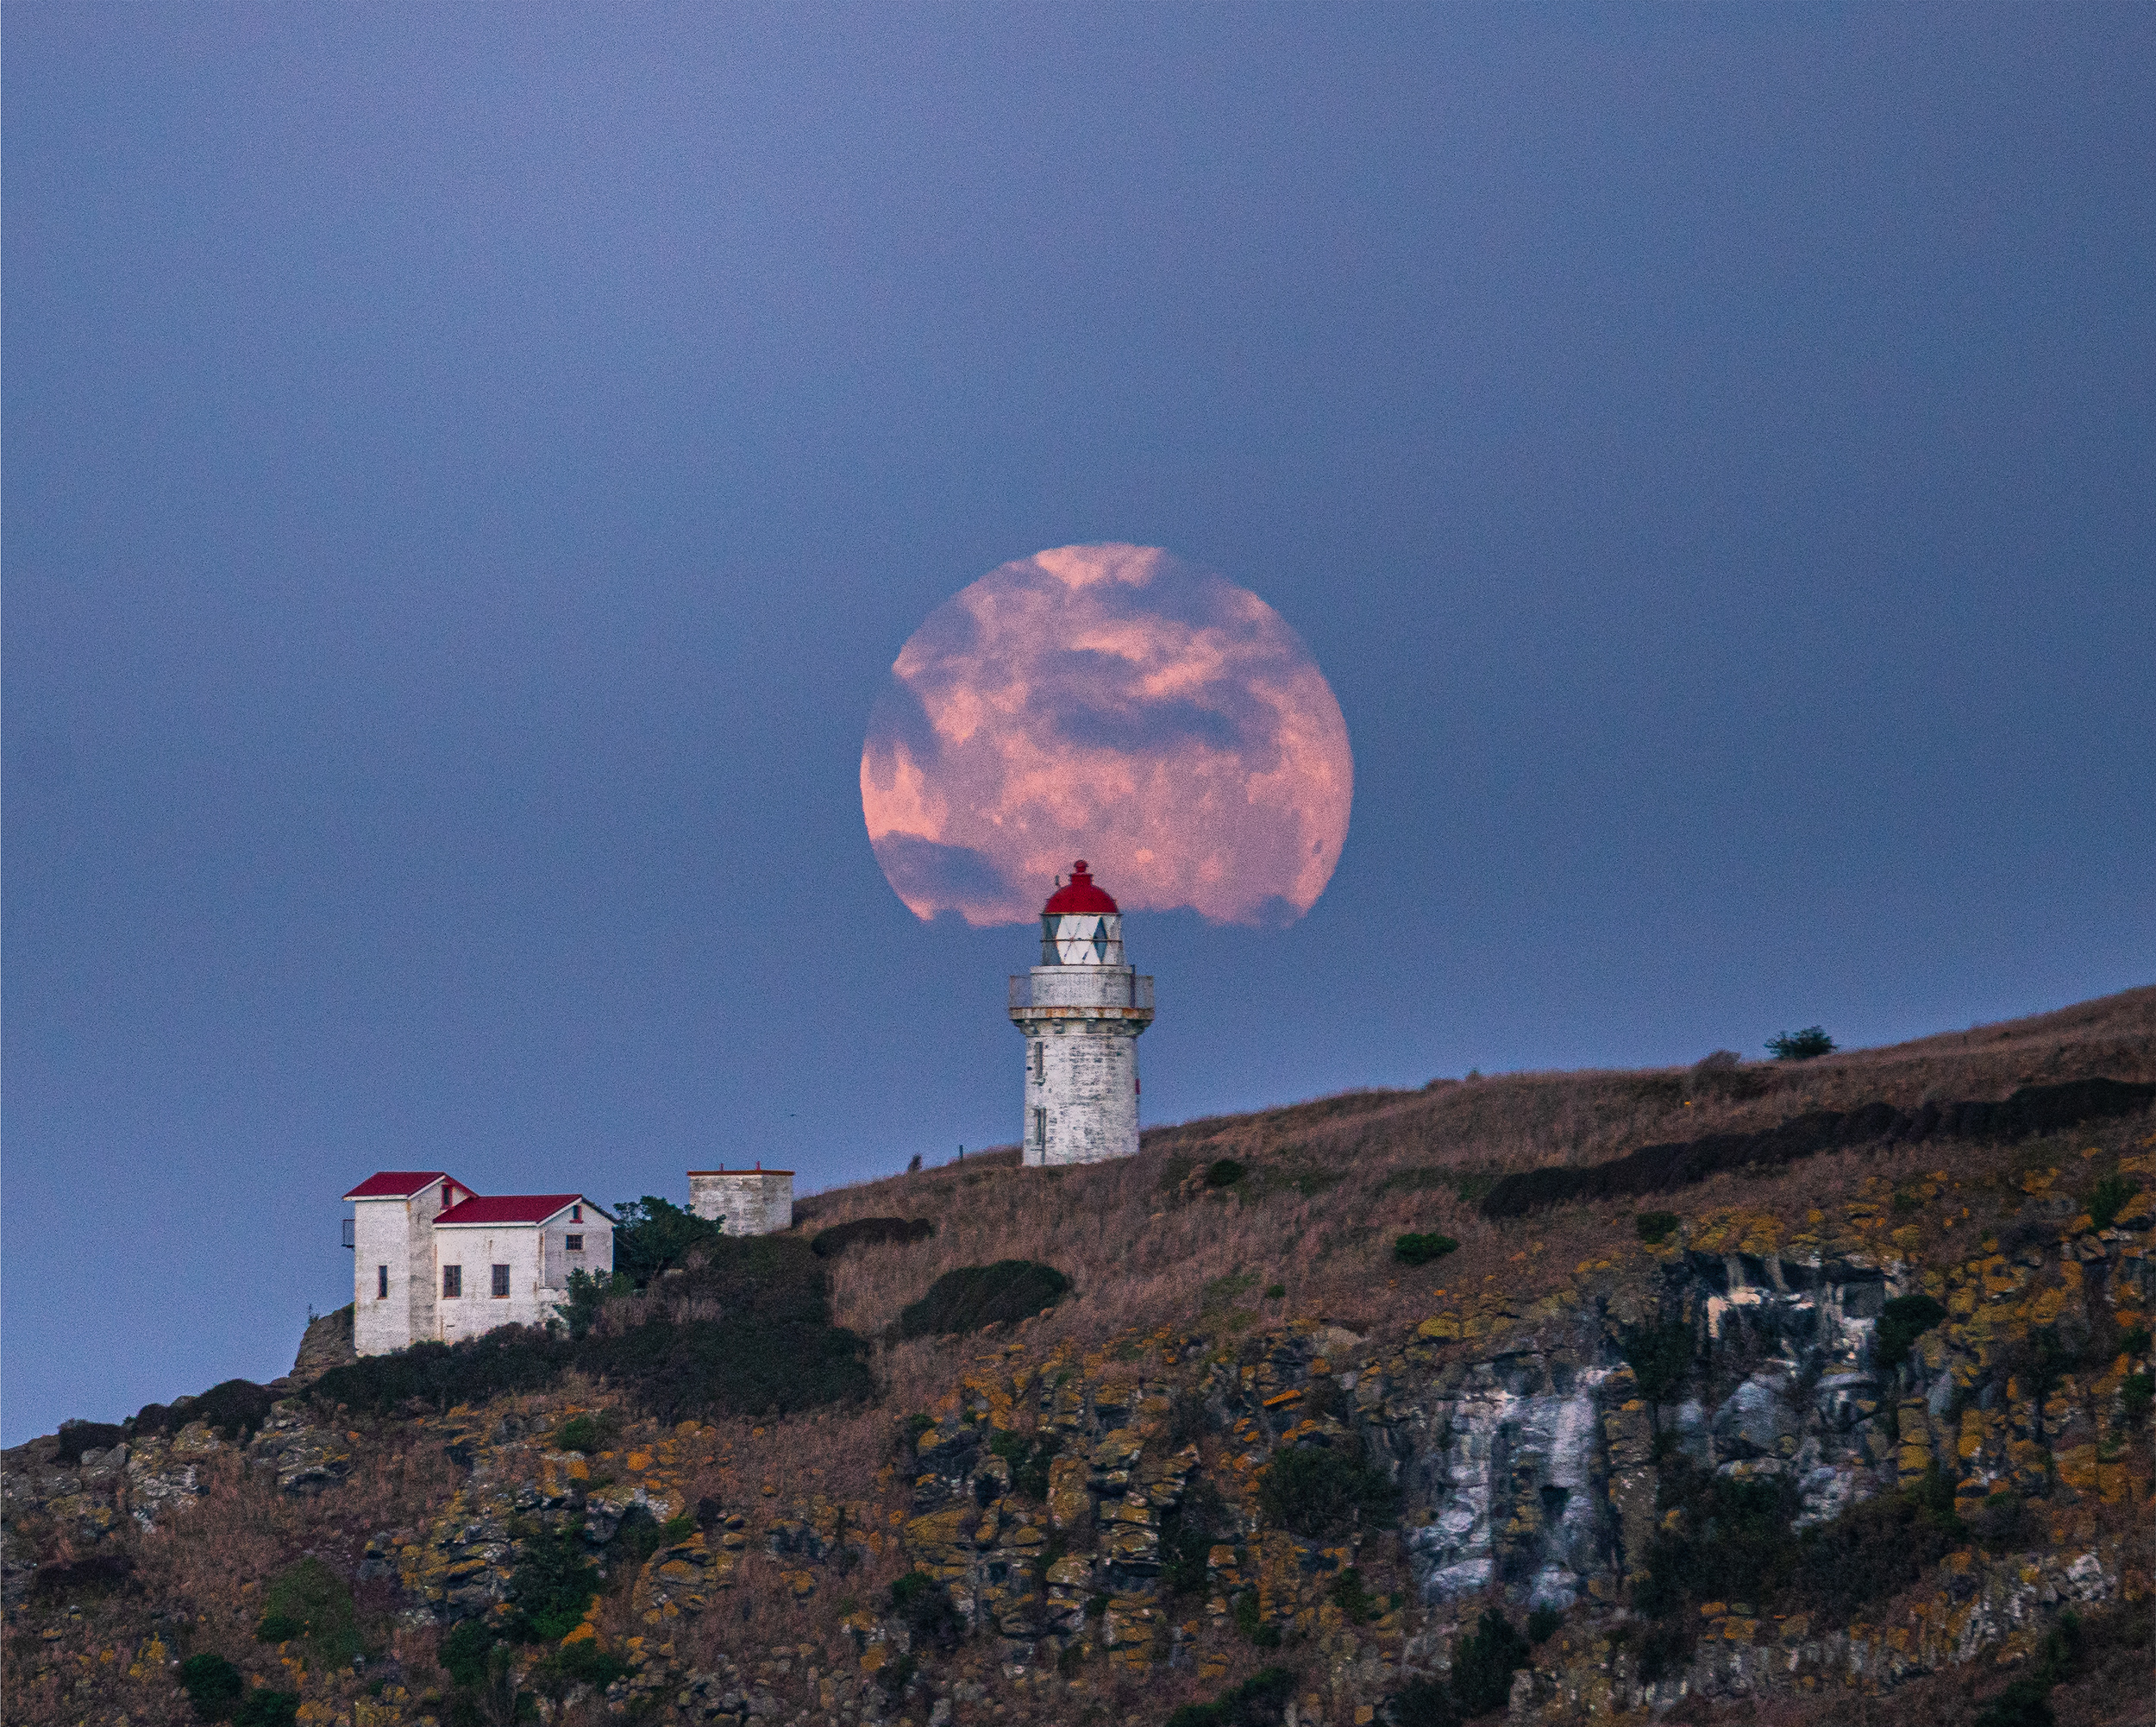 Moon over the Taiaroa Head Lighthouse by Dilanka Wijesekara